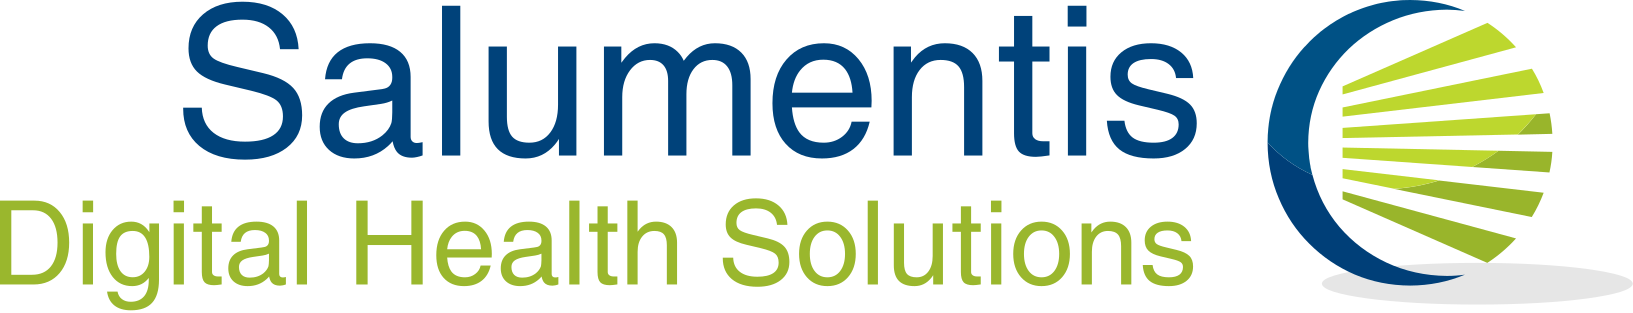 Salumentis – Digital Health Solutions